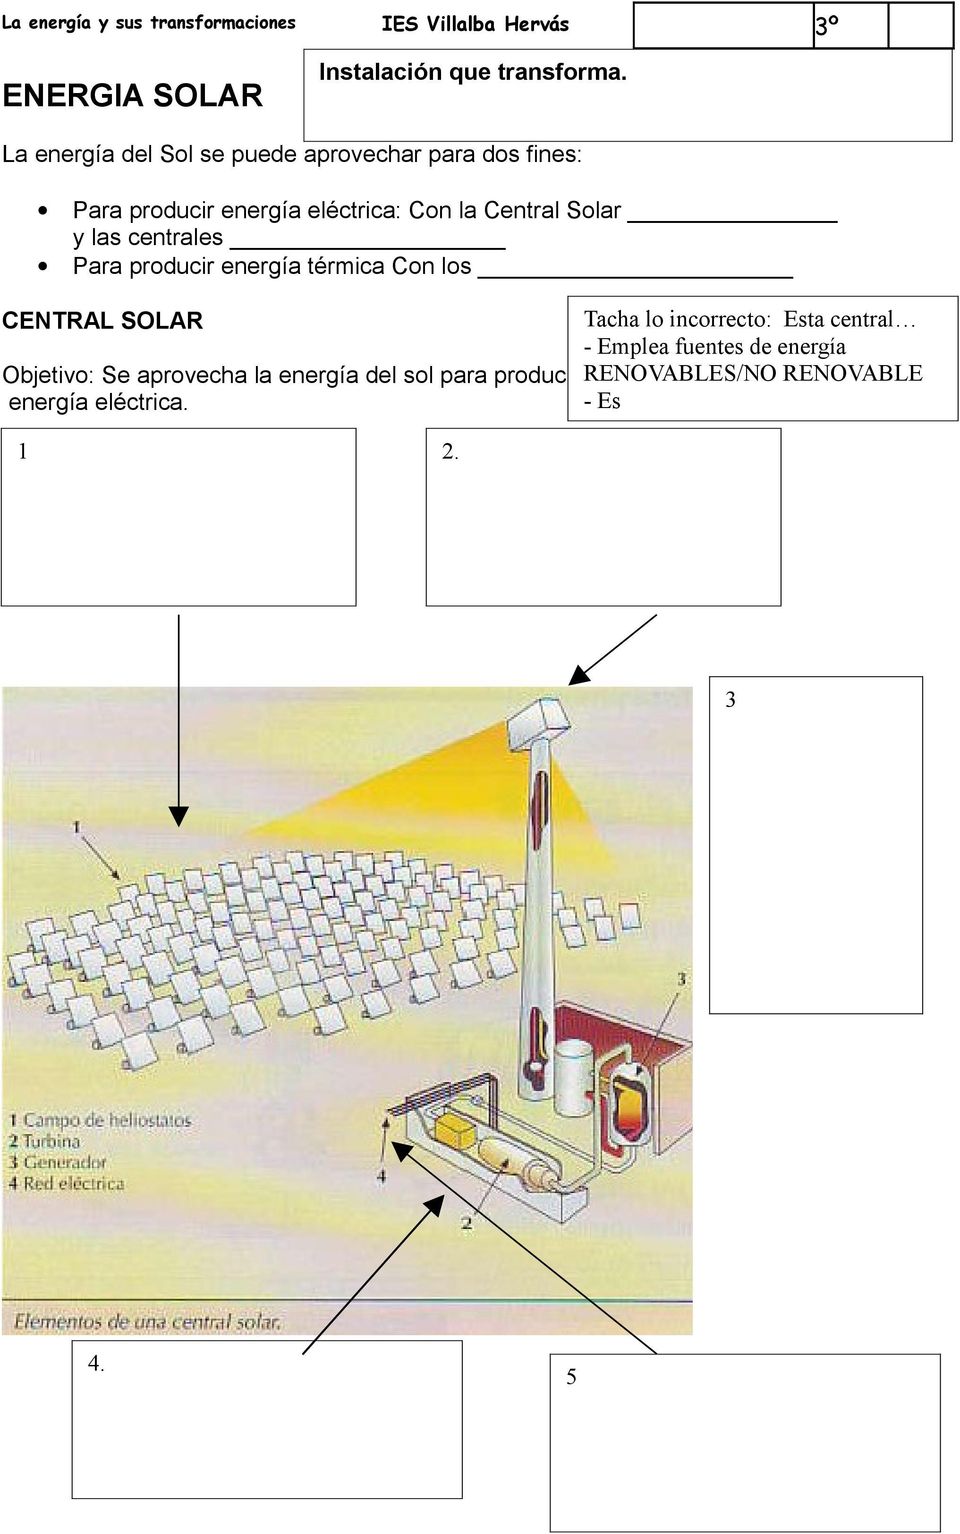 Central Solar y las centrales Para producir energía térmica Con los Tacha lo incorrecto: Esta